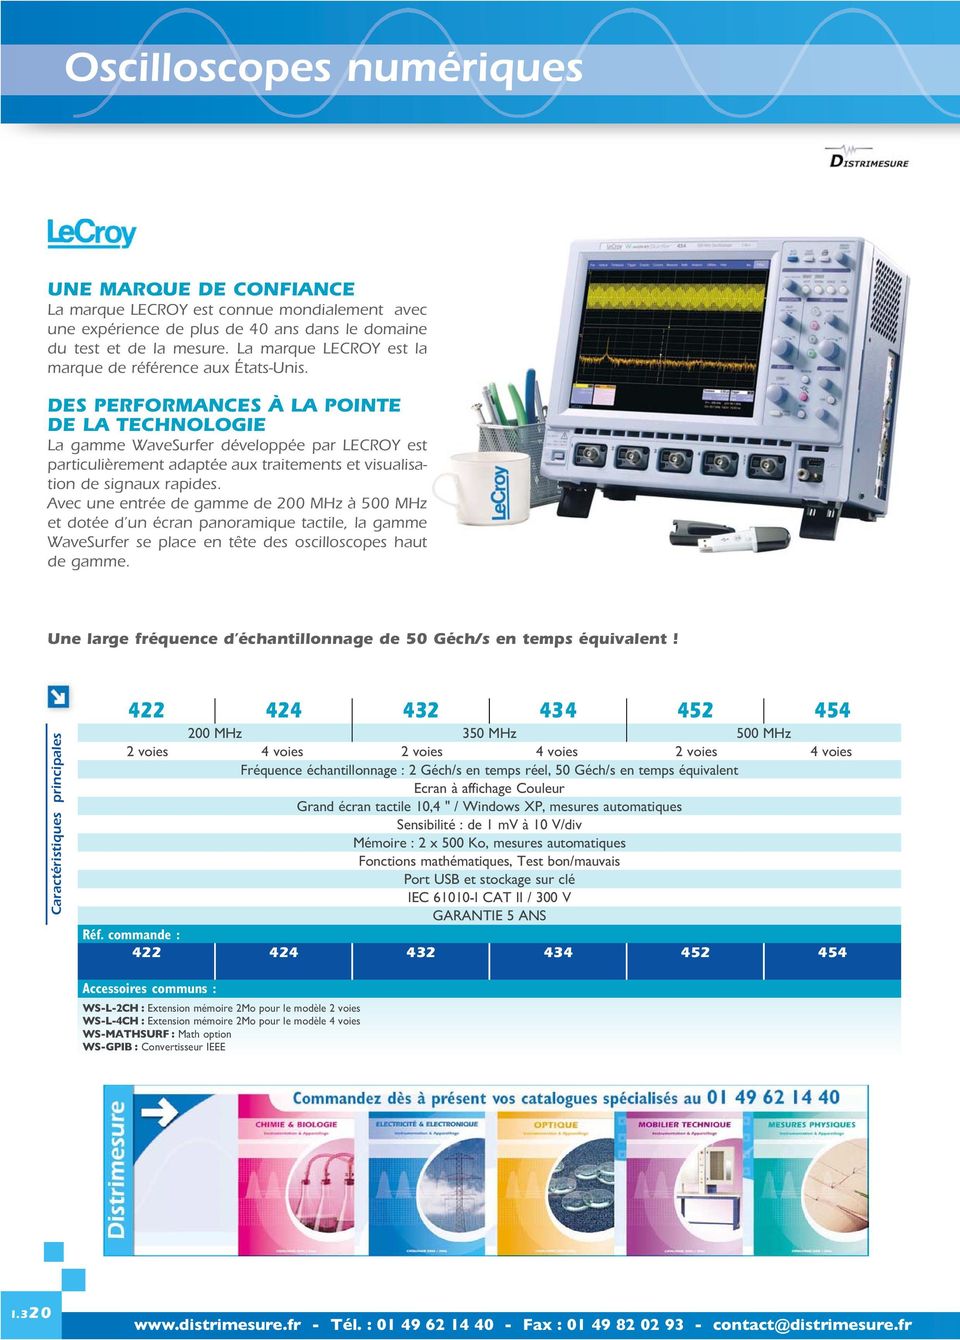 DES PERFORMANCES À LA POINTE DE LA TECHNOLOGIE La gamme WaveSurfer développée par LECROY est particulièrement adaptée aux traitements et visualisation de signaux rapides.